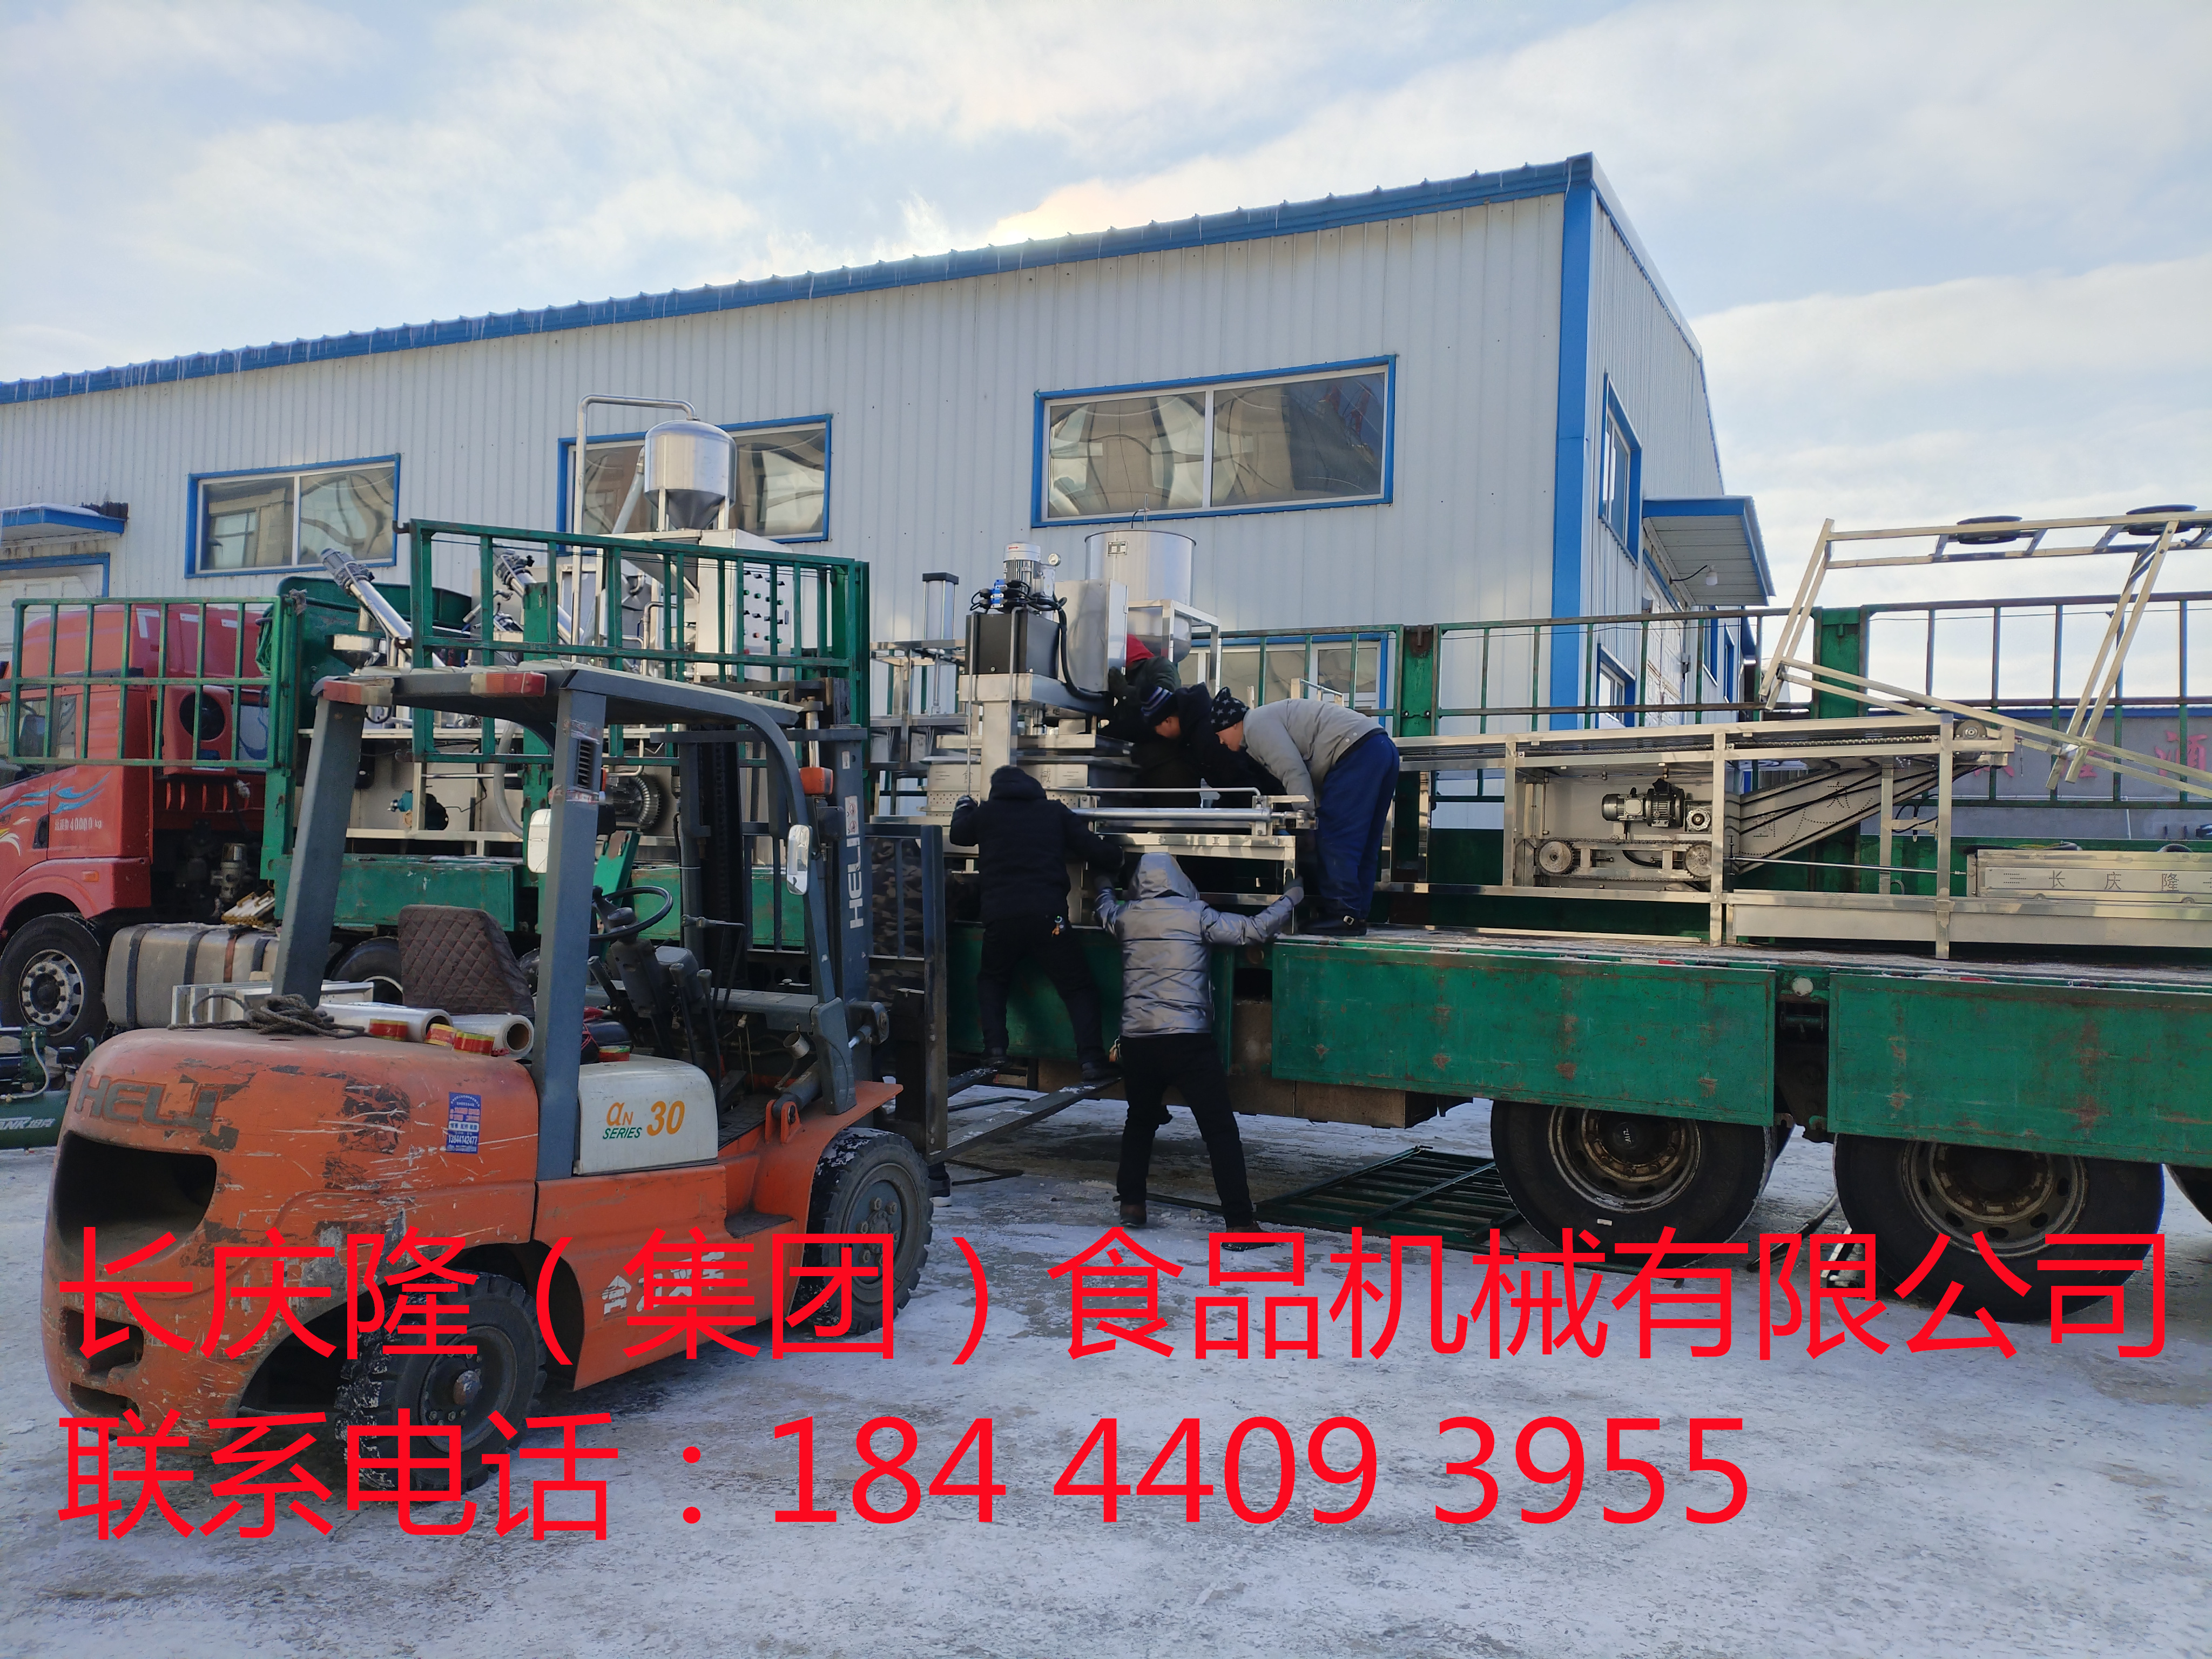 河北滦县客户订购的大型干豆腐机生产线马上装车 (9)_副本.jpg